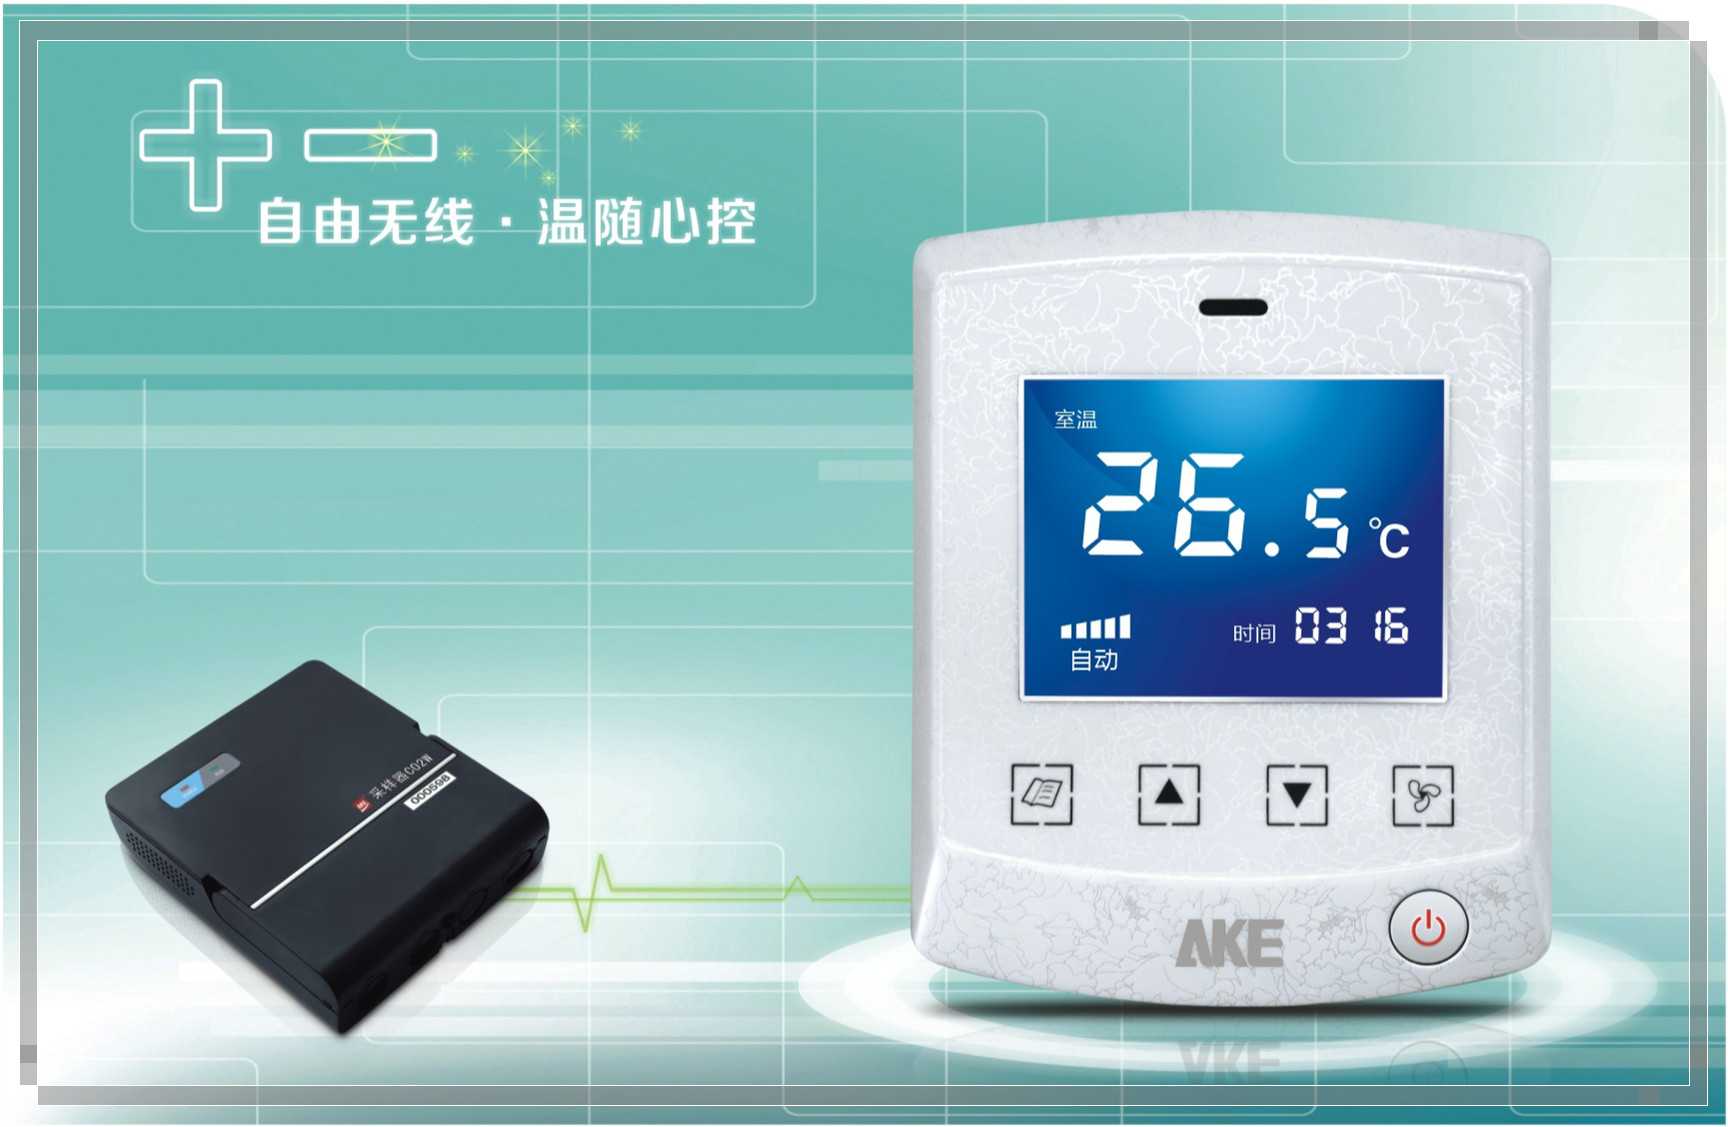 艾科 中央空调计费 建筑能源管理系统 无线空调计量C02W,广东艾科技术股份有限公司